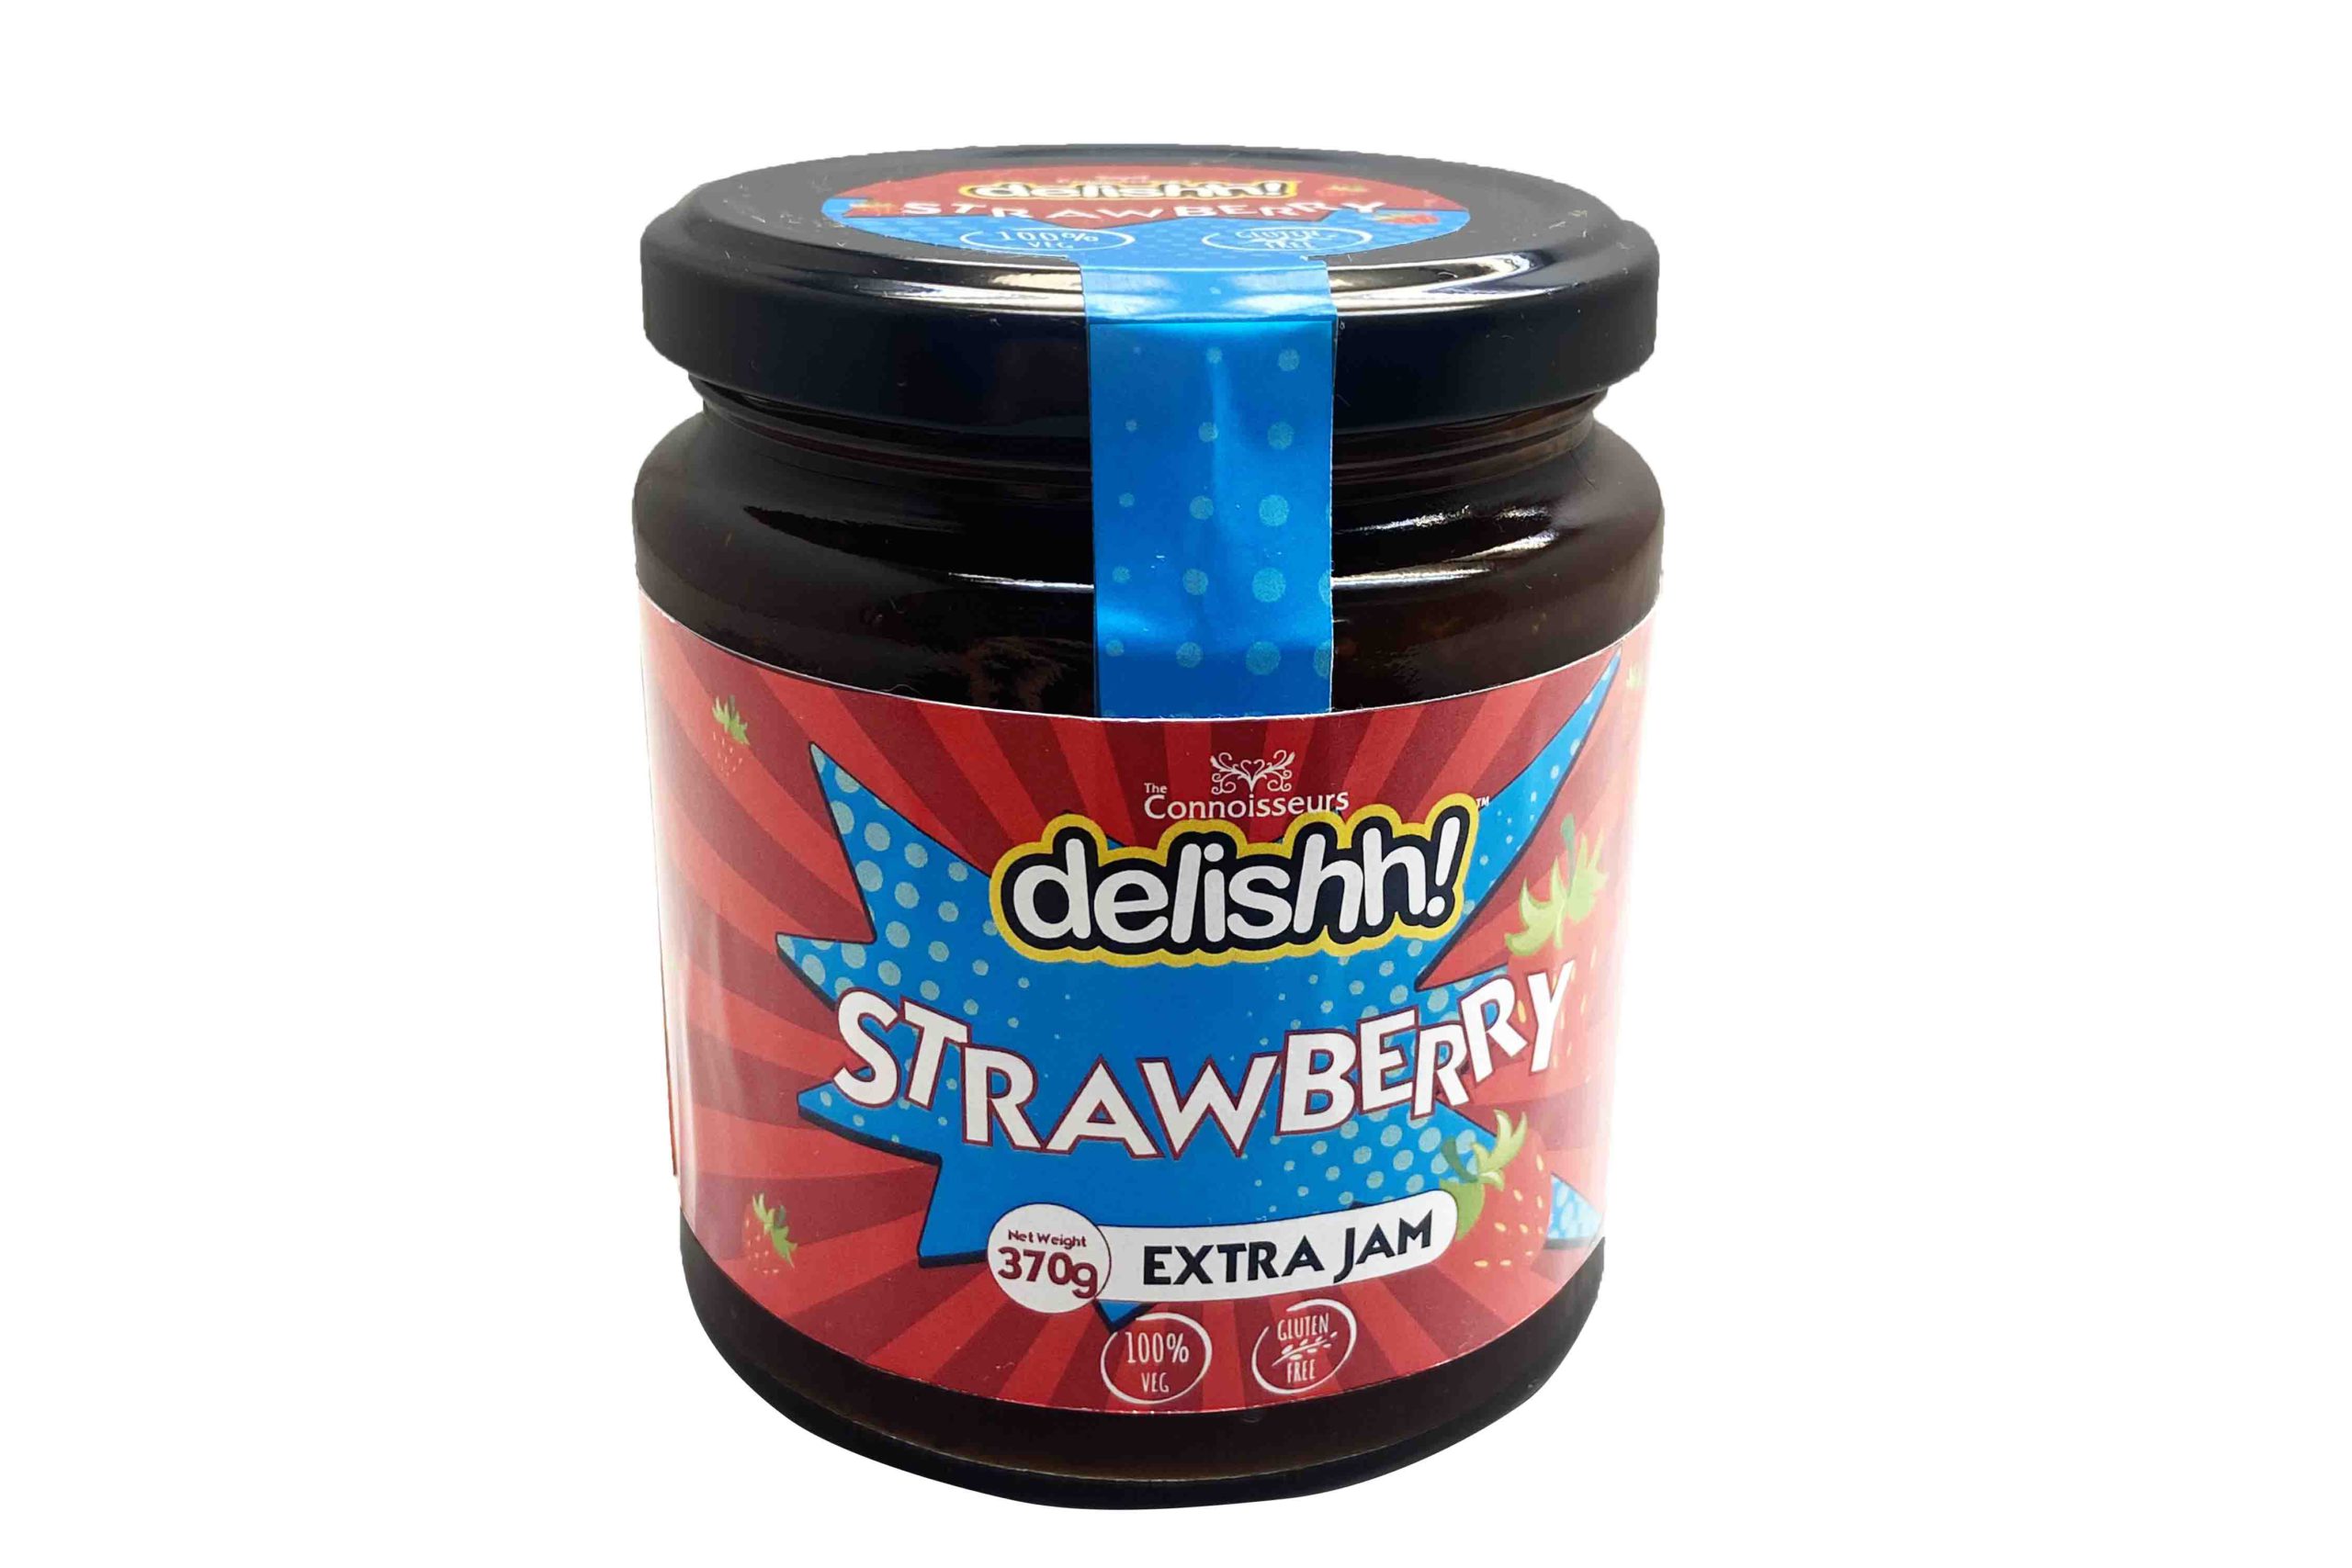 Delishh Strawberry Jam